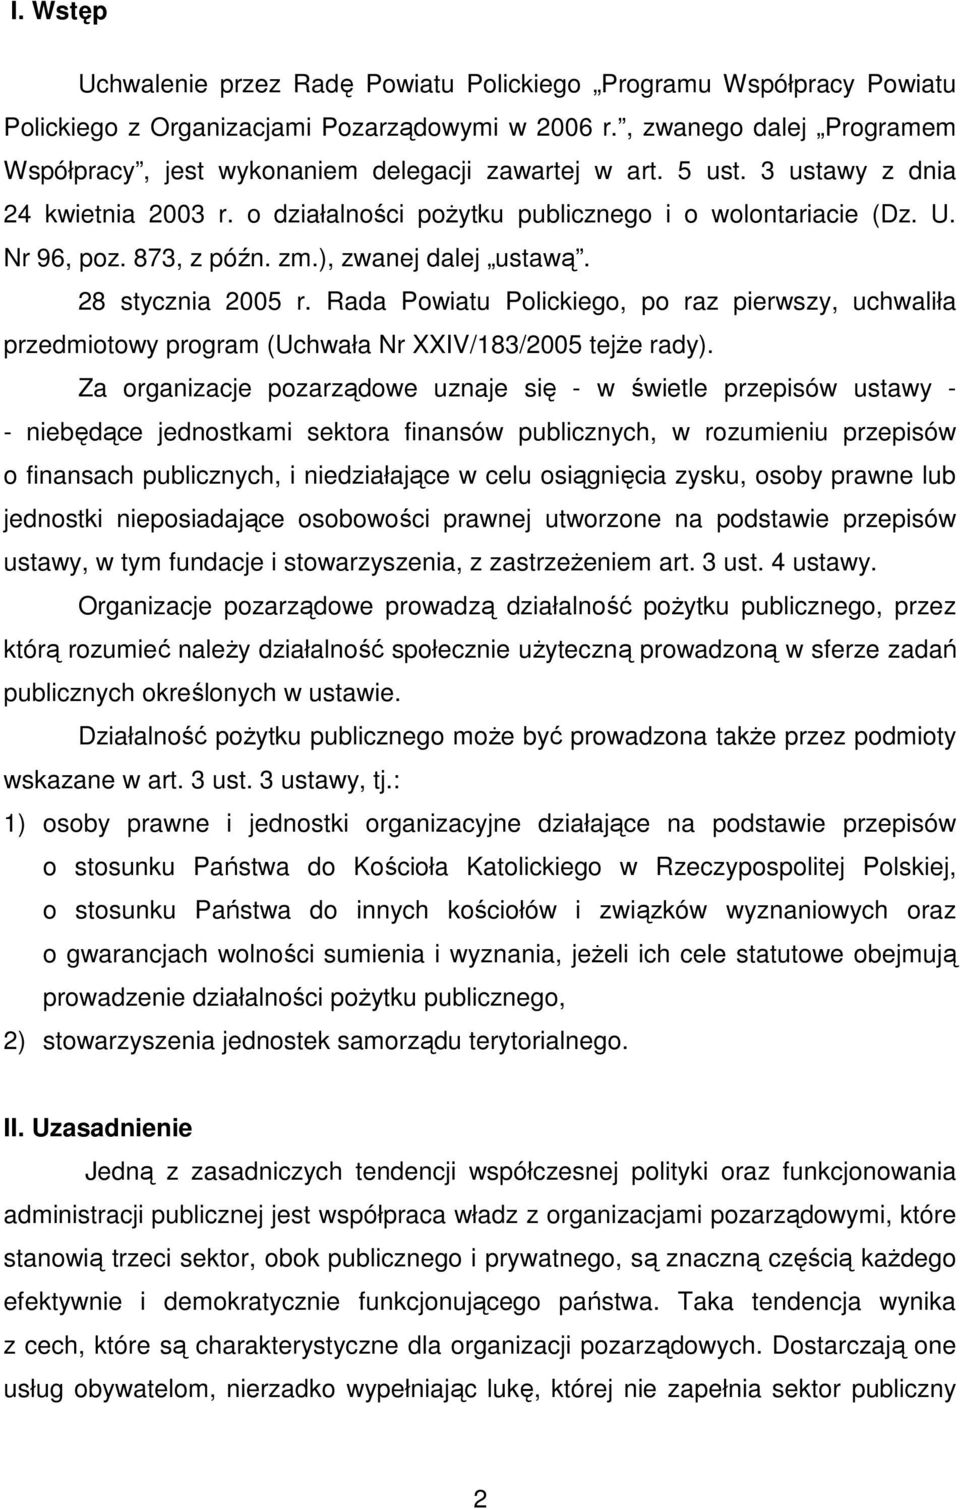 873, z późn. zm.), zwanej dalej ustawą. 28 stycznia 2005 r. Rada Powiatu Polickiego, po raz pierwszy, uchwaliła przedmiotowy program (Uchwała Nr XXIV/183/2005 tejŝe rady).